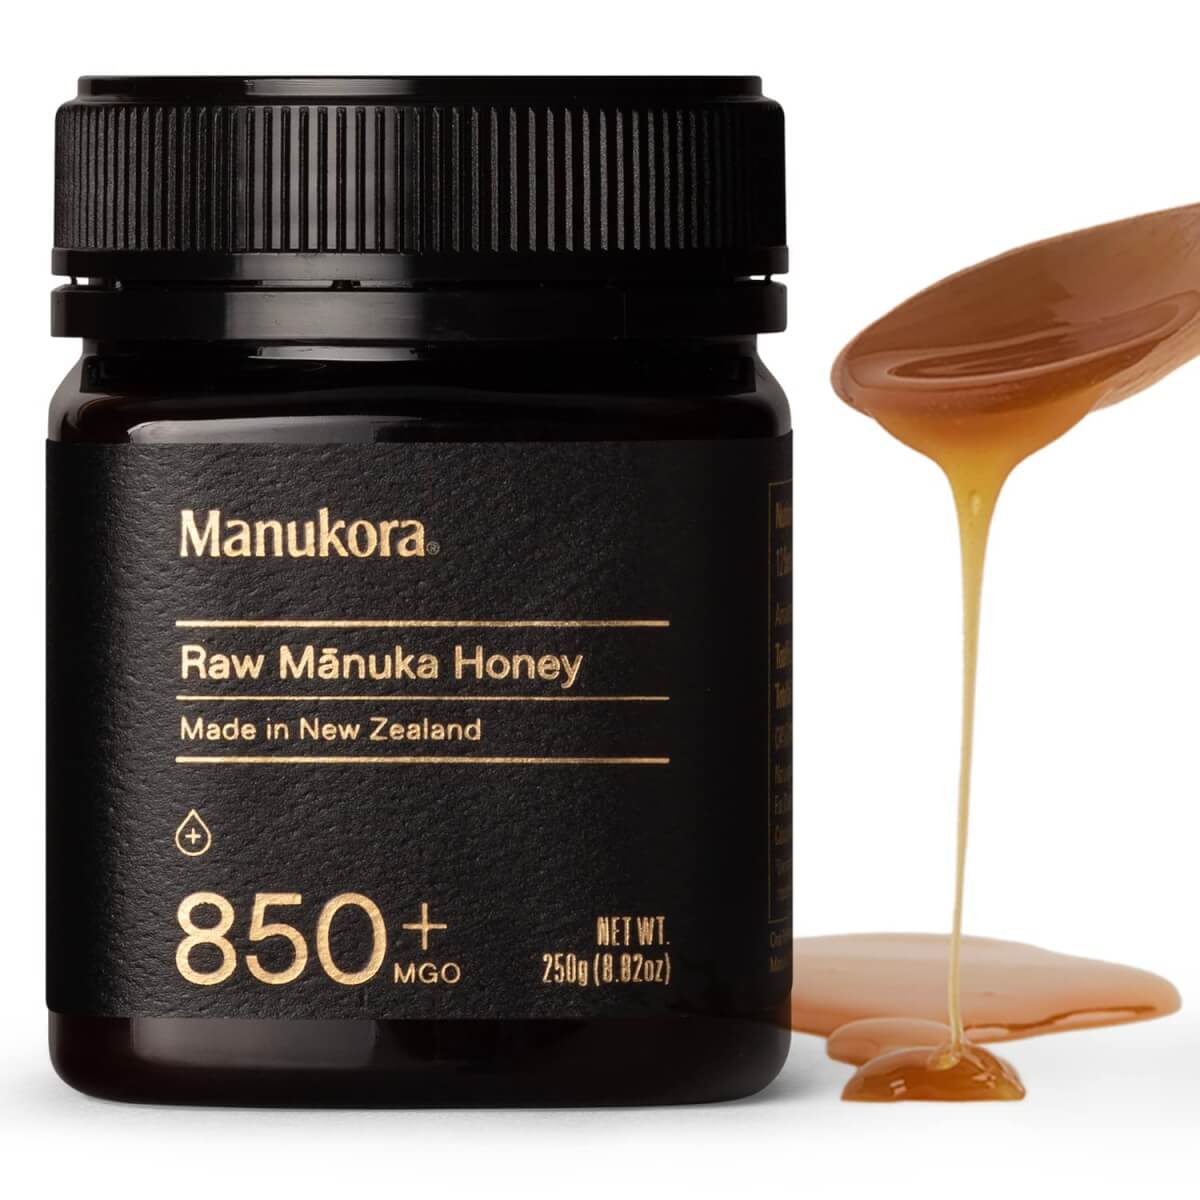 Manukora Raw Manuka Honey